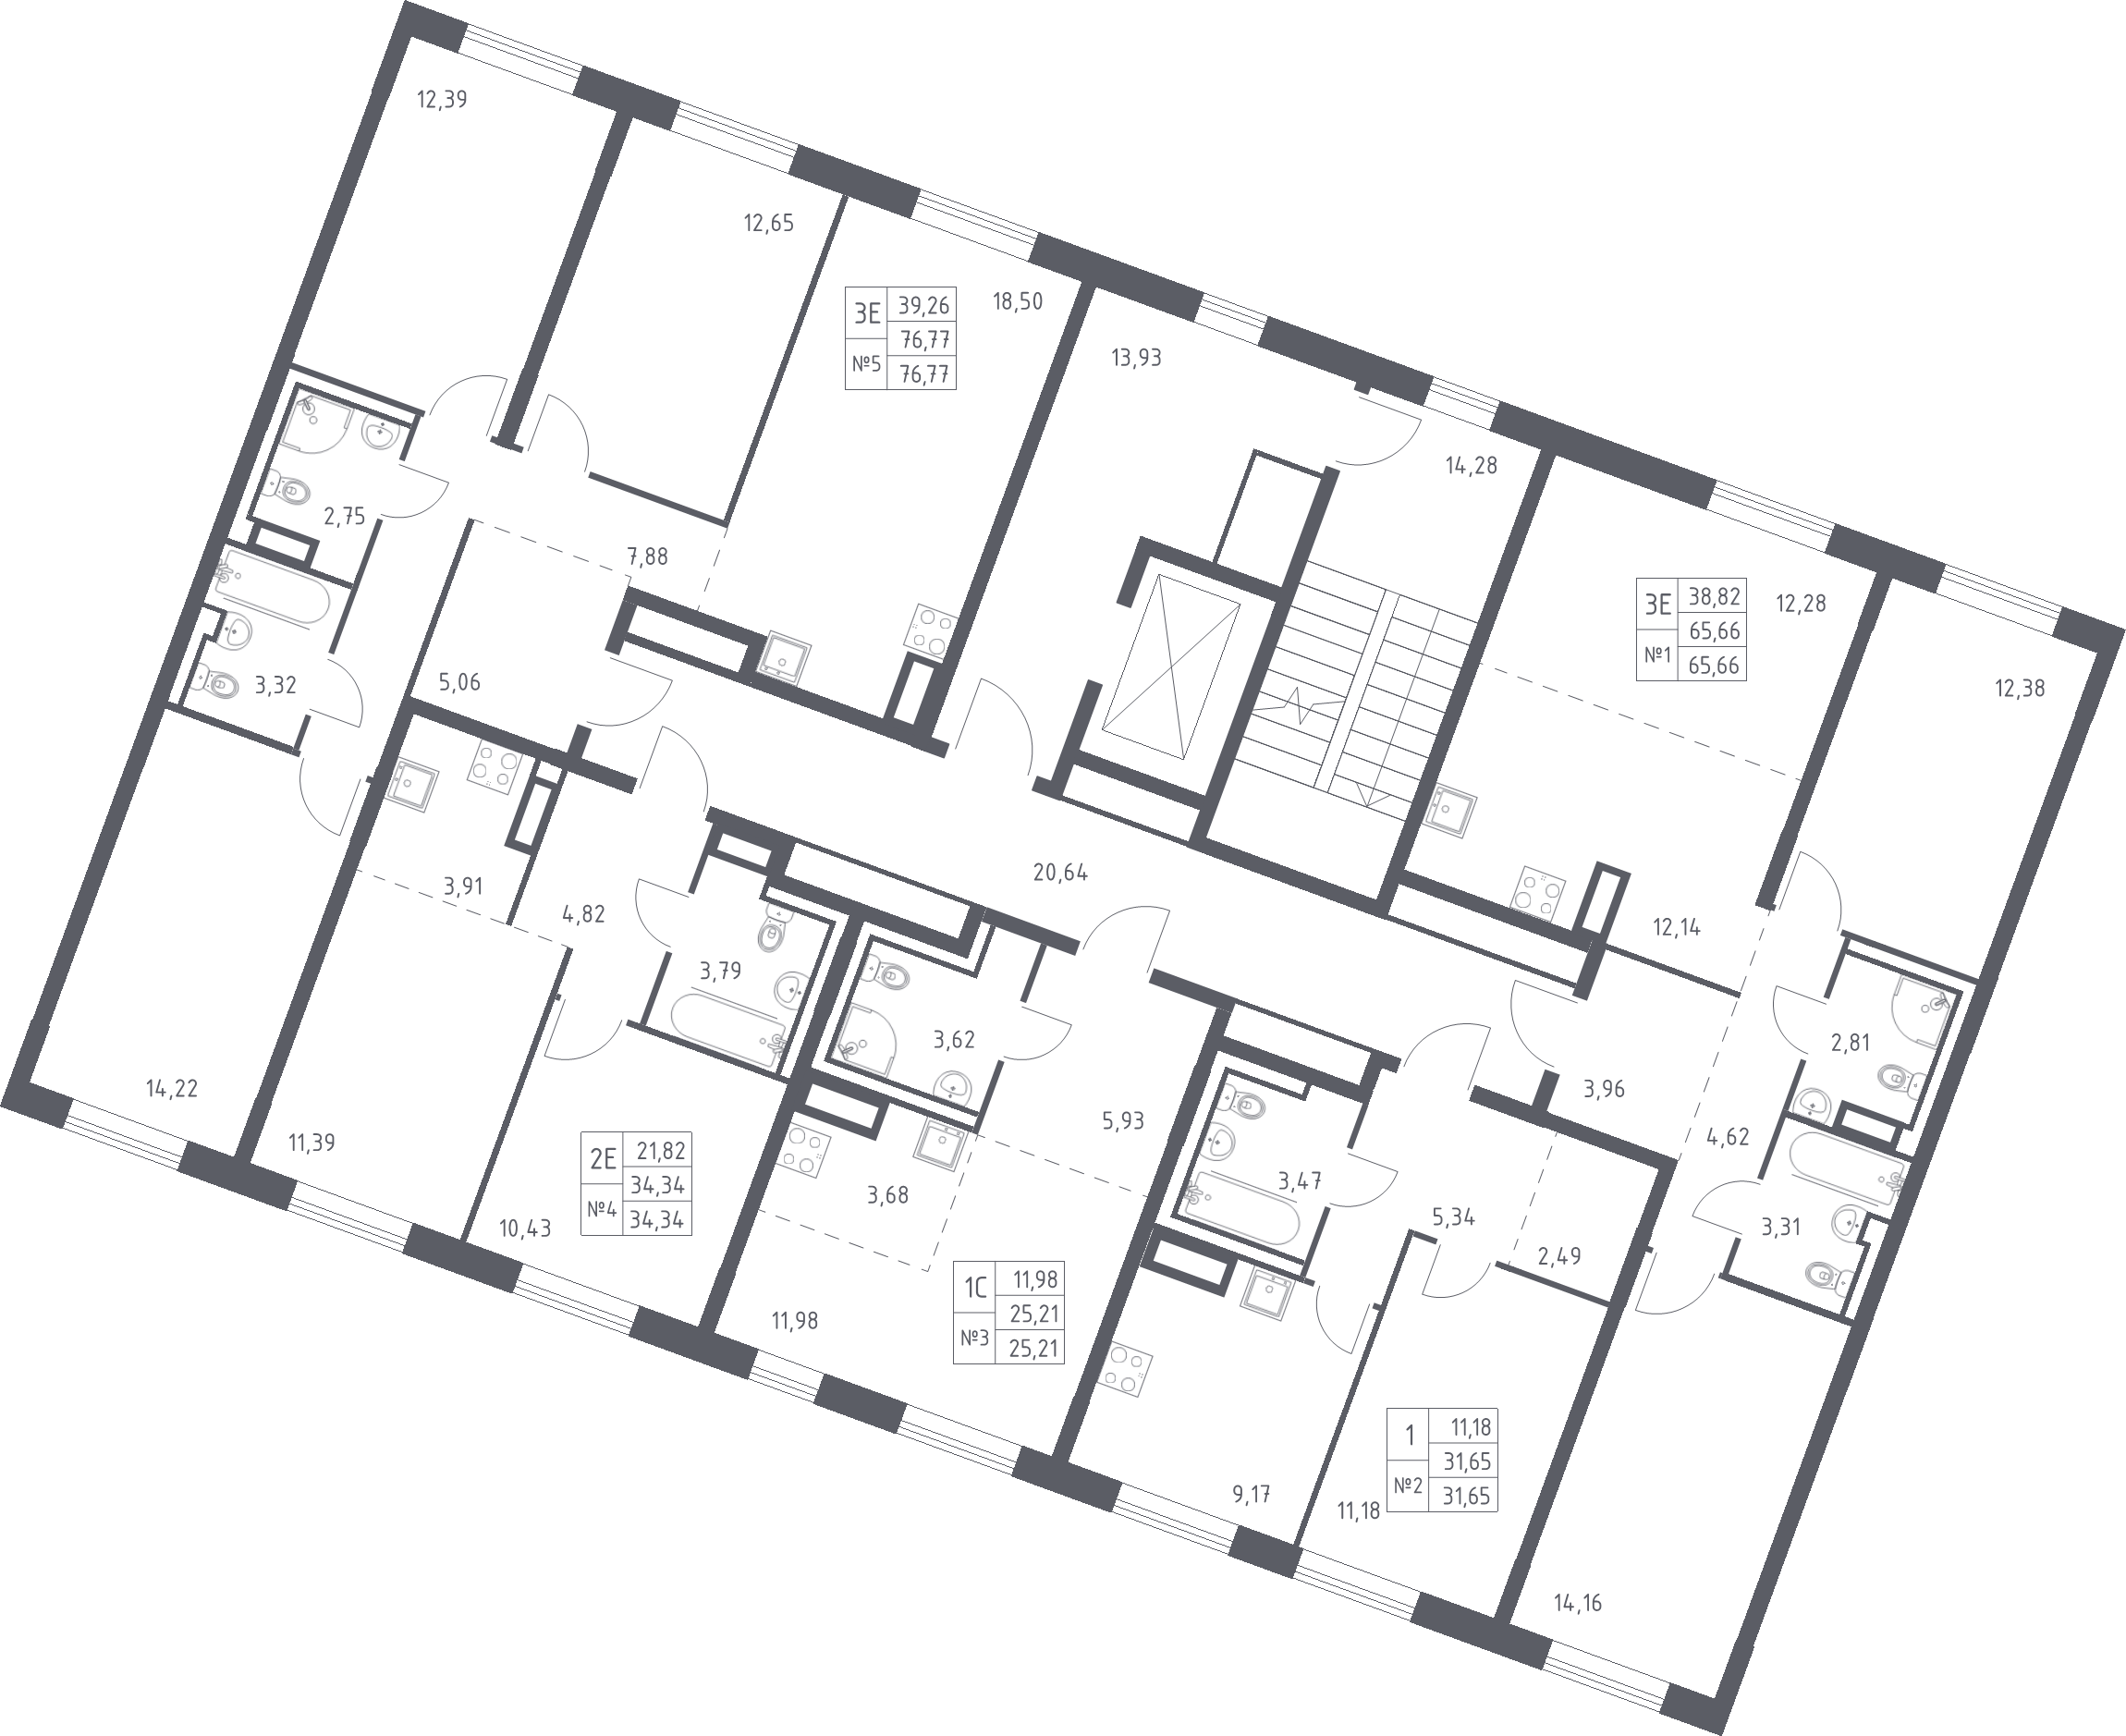 Квартира-студия, 25.21 м² в ЖК "Квартал Лаголово" - планировка этажа